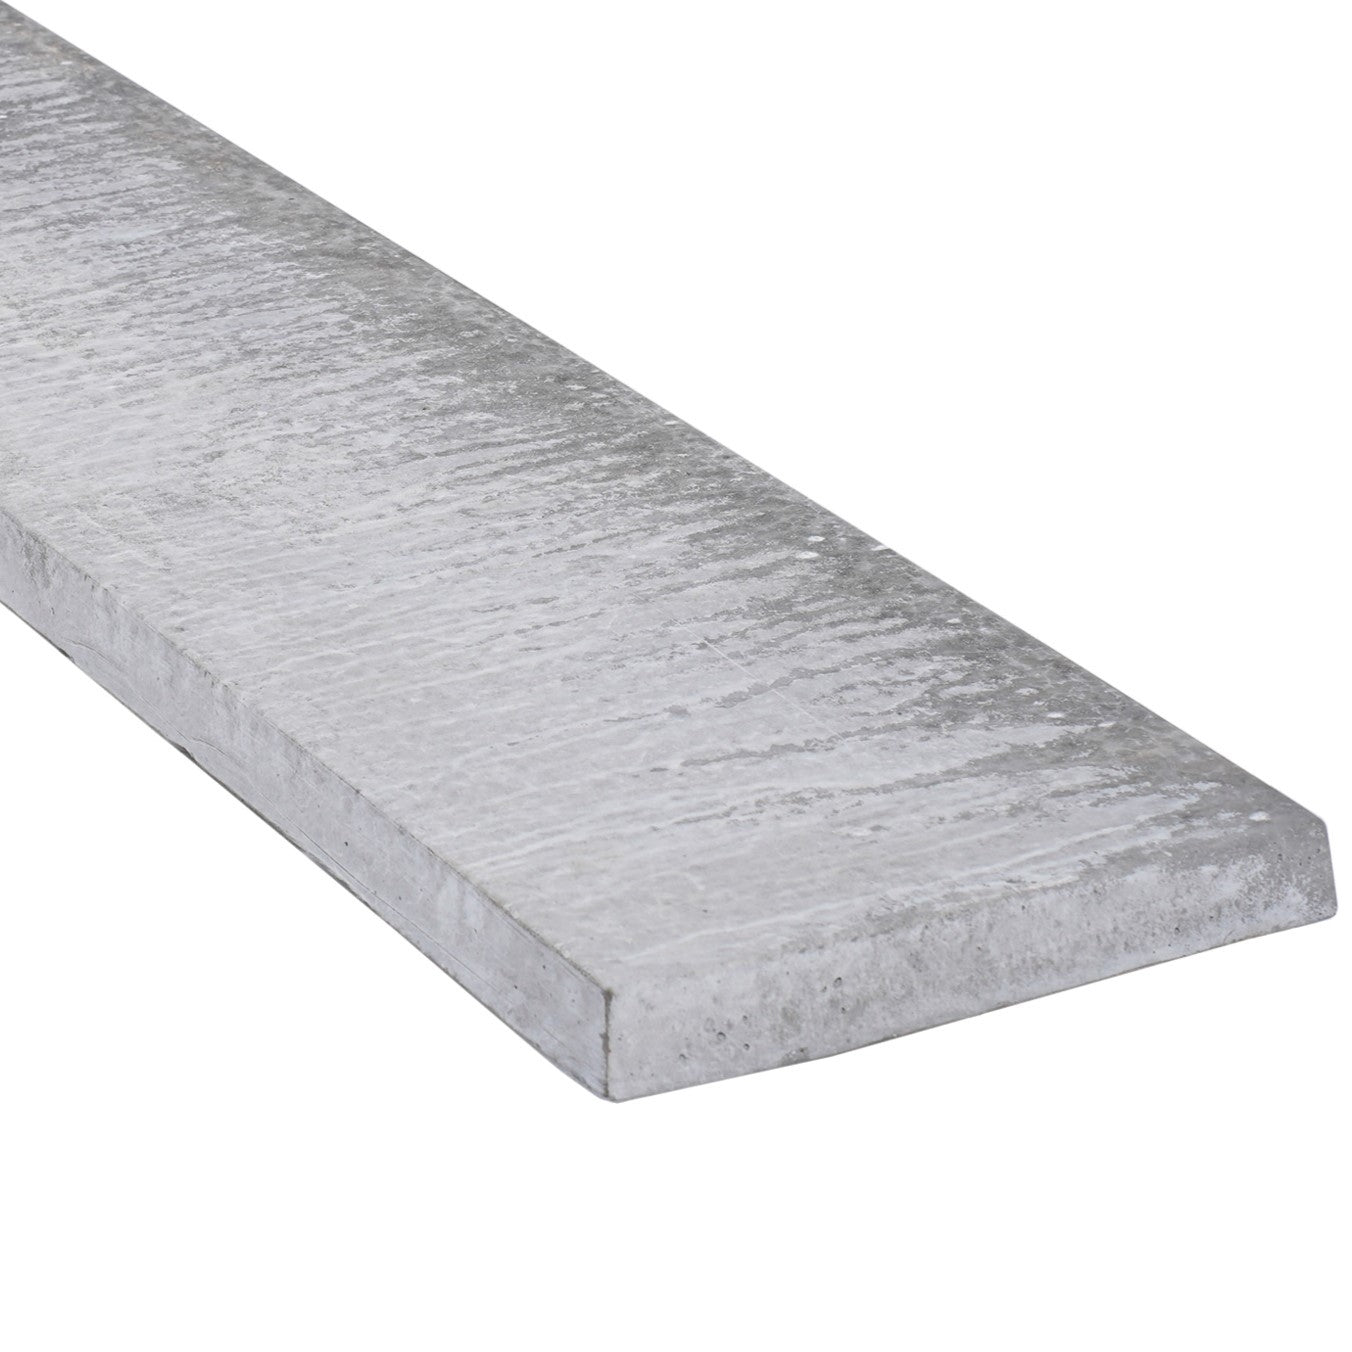 12 Inch Solid Concrete Gravel Board